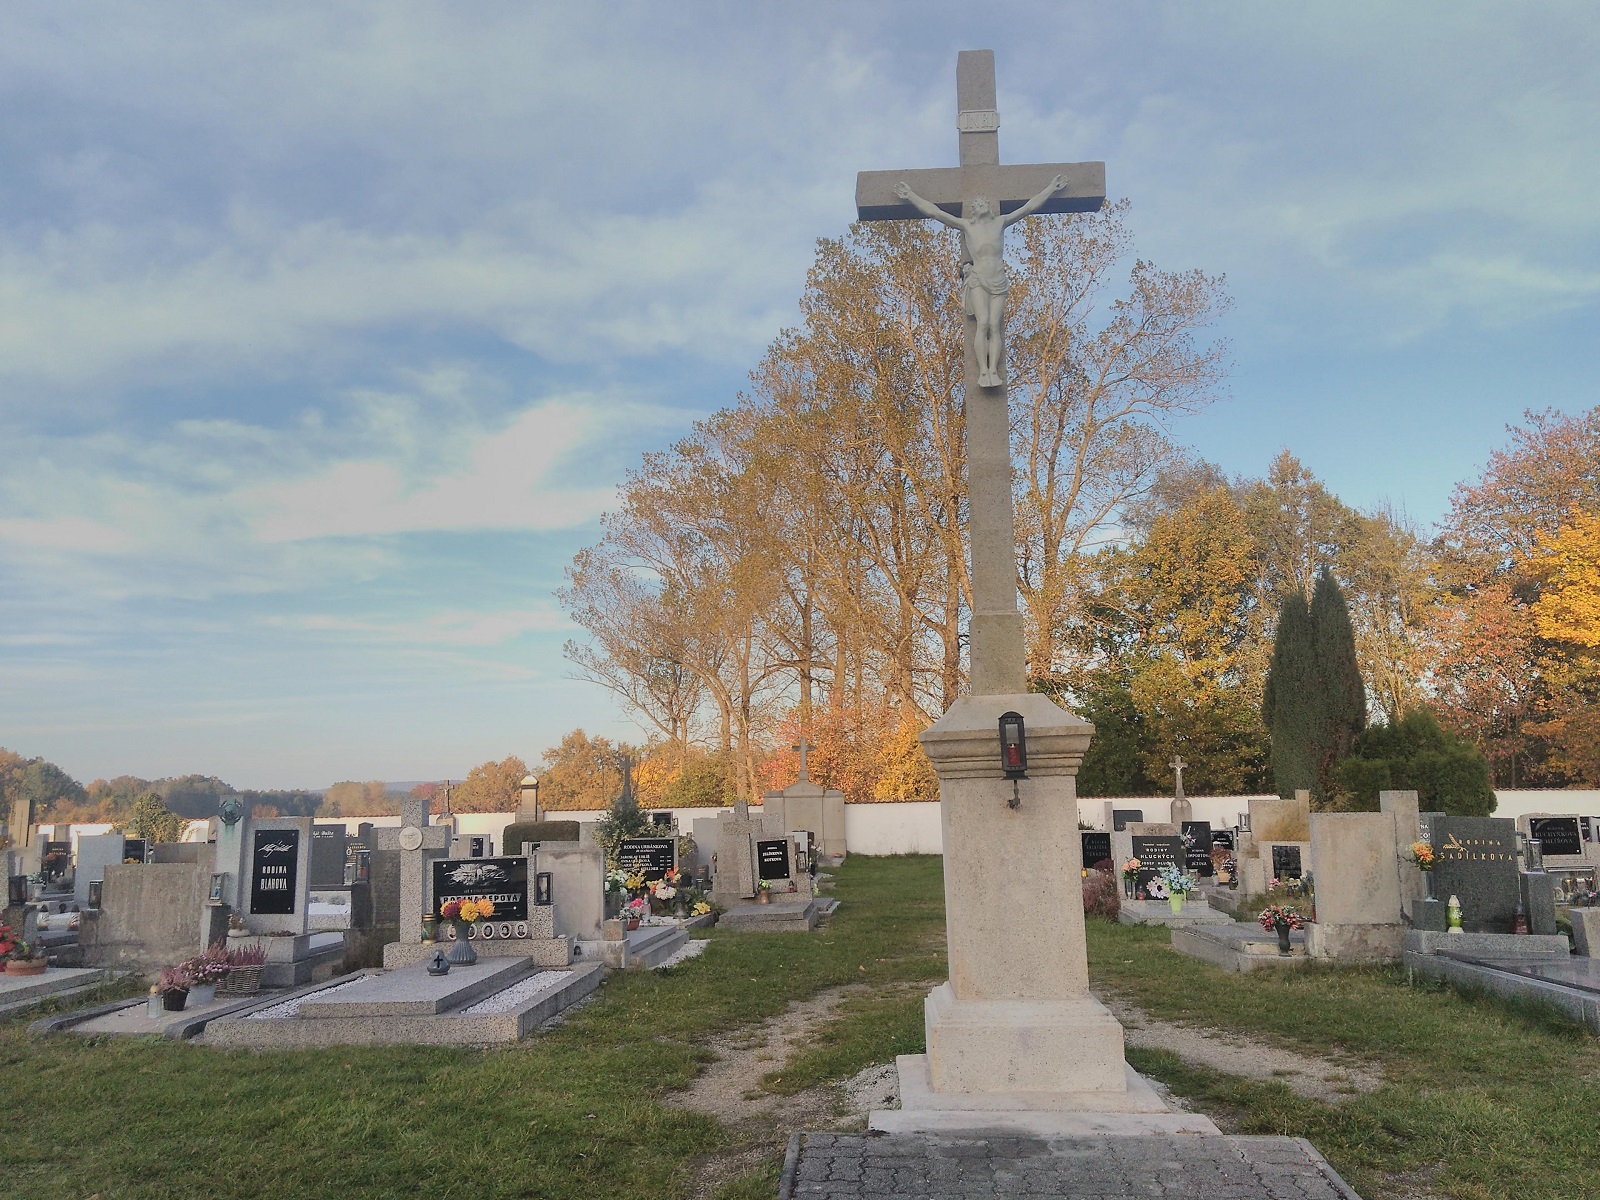 V listopadu - hřbitov s nově opraveným křížem ( realizoval Městys), farnost zde koná modlitby za zemřelé)